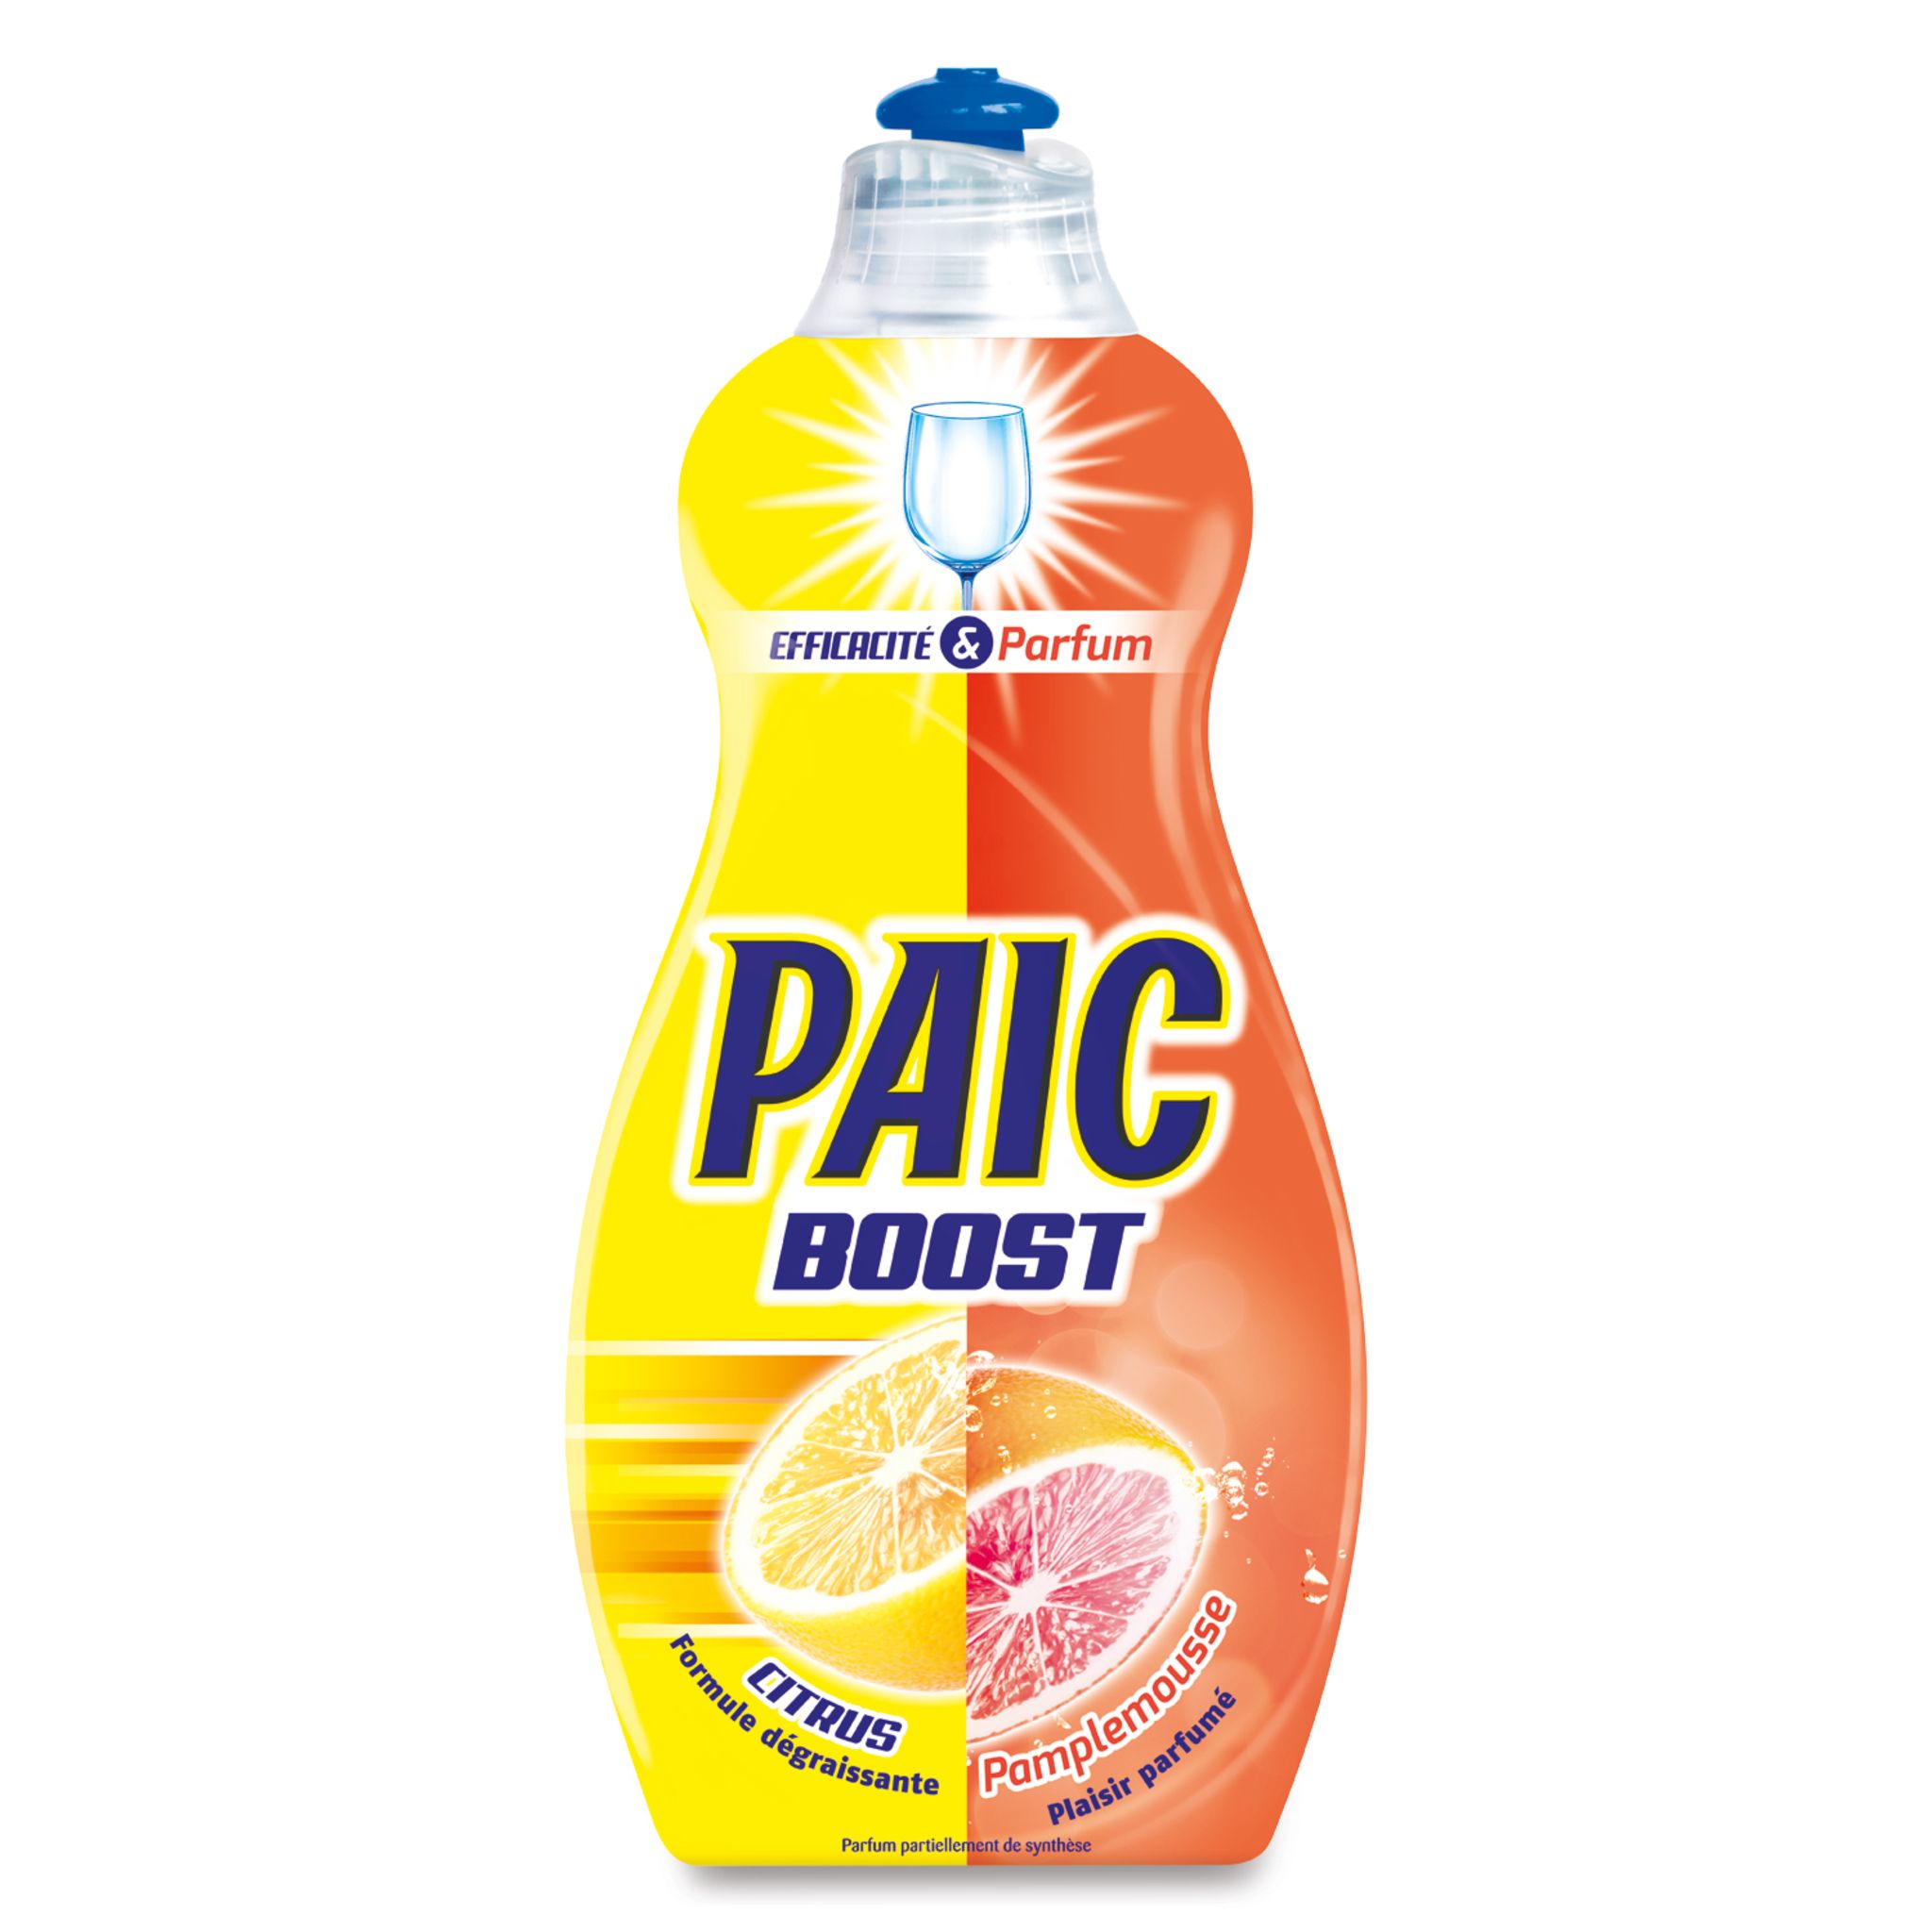 PAIC Paic boost liquide vaisselle citron pamplemousse 500ml pas